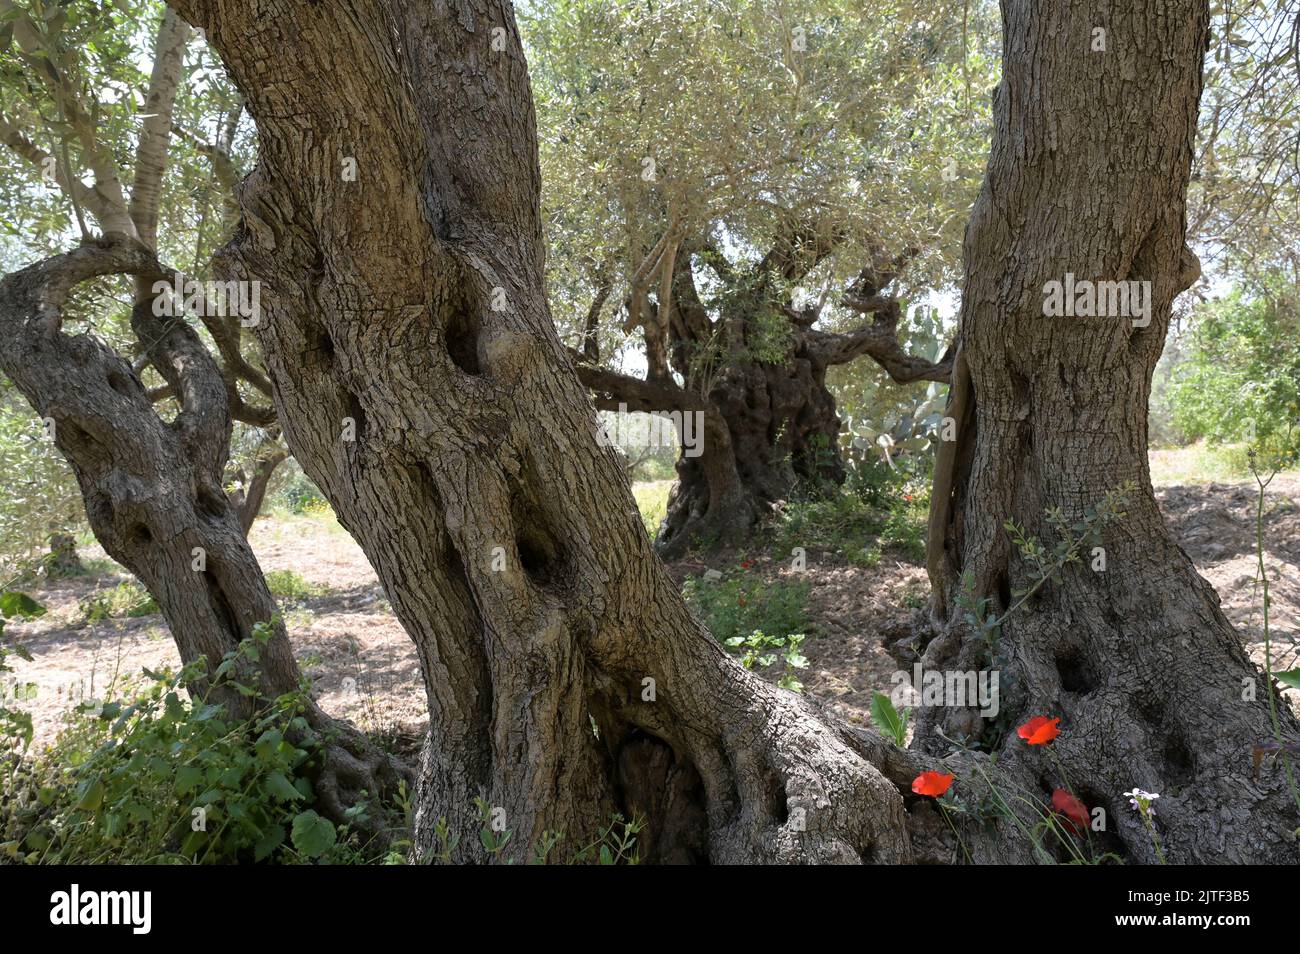 PALESTINE, Jenin, olive farming, 200 year old olive tree from Roman empire era / PALÄSTINA, Jenin, Oliven Anbau, 2000 Jahre alter Olivenbaum aus der römischen Zeit Stock Photo